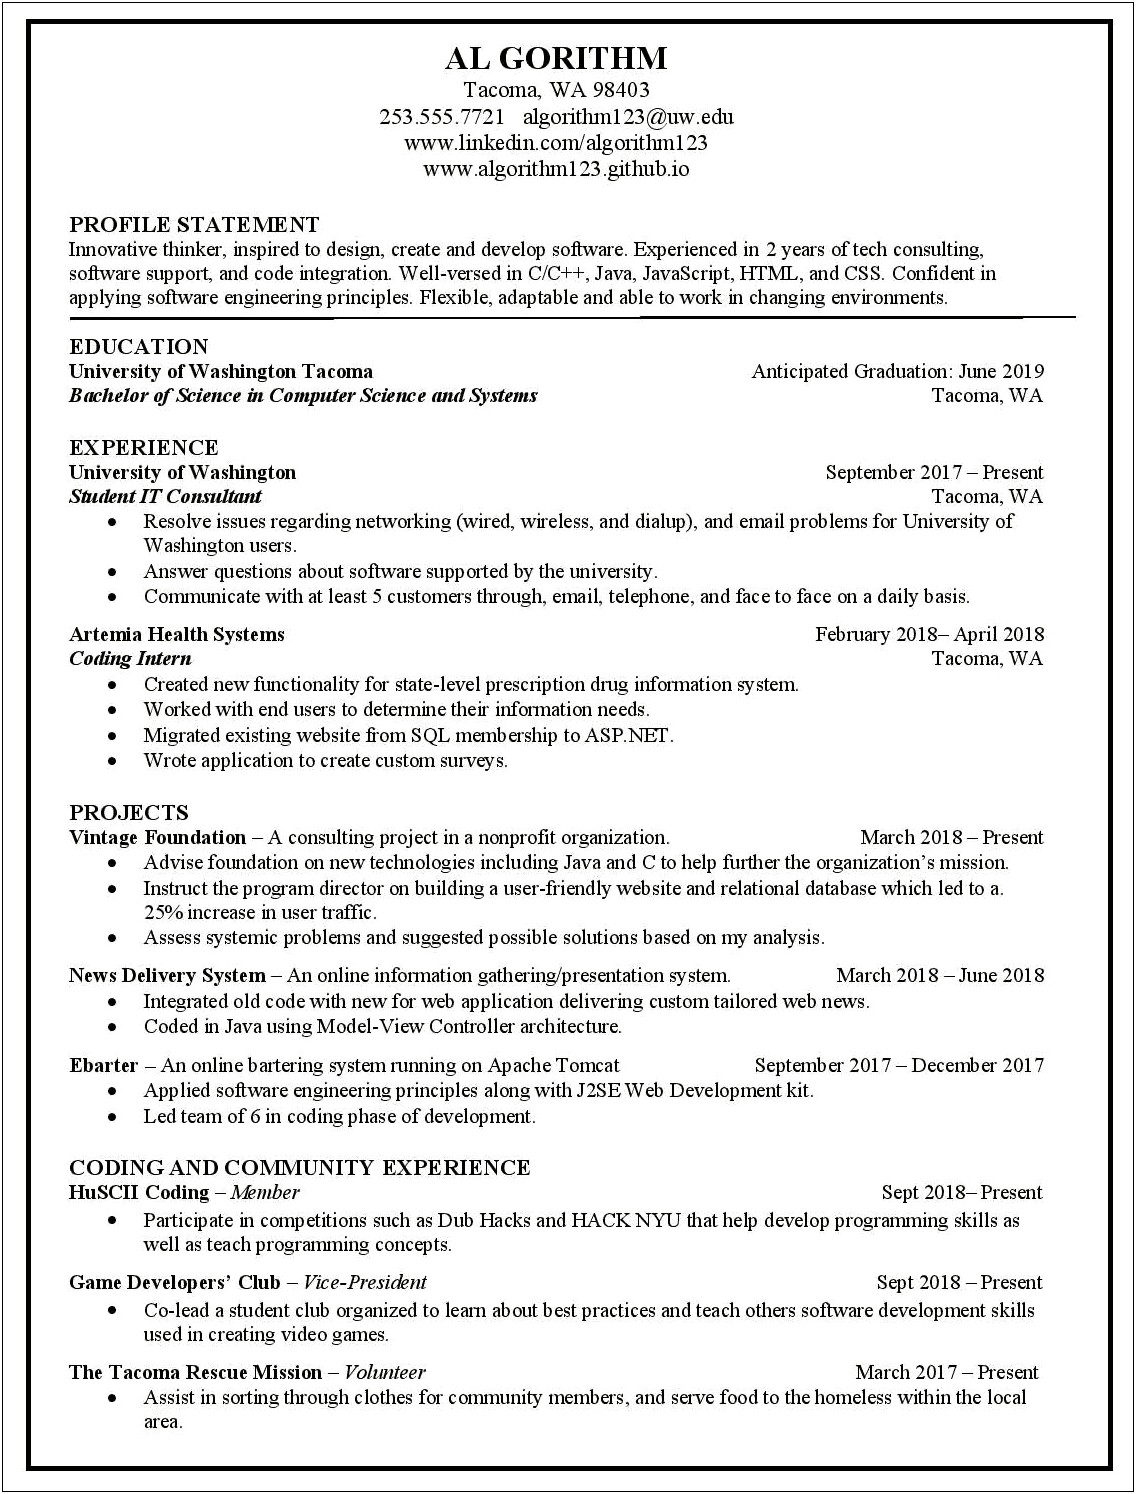 Resume Cover Letter For Job Interview Sample